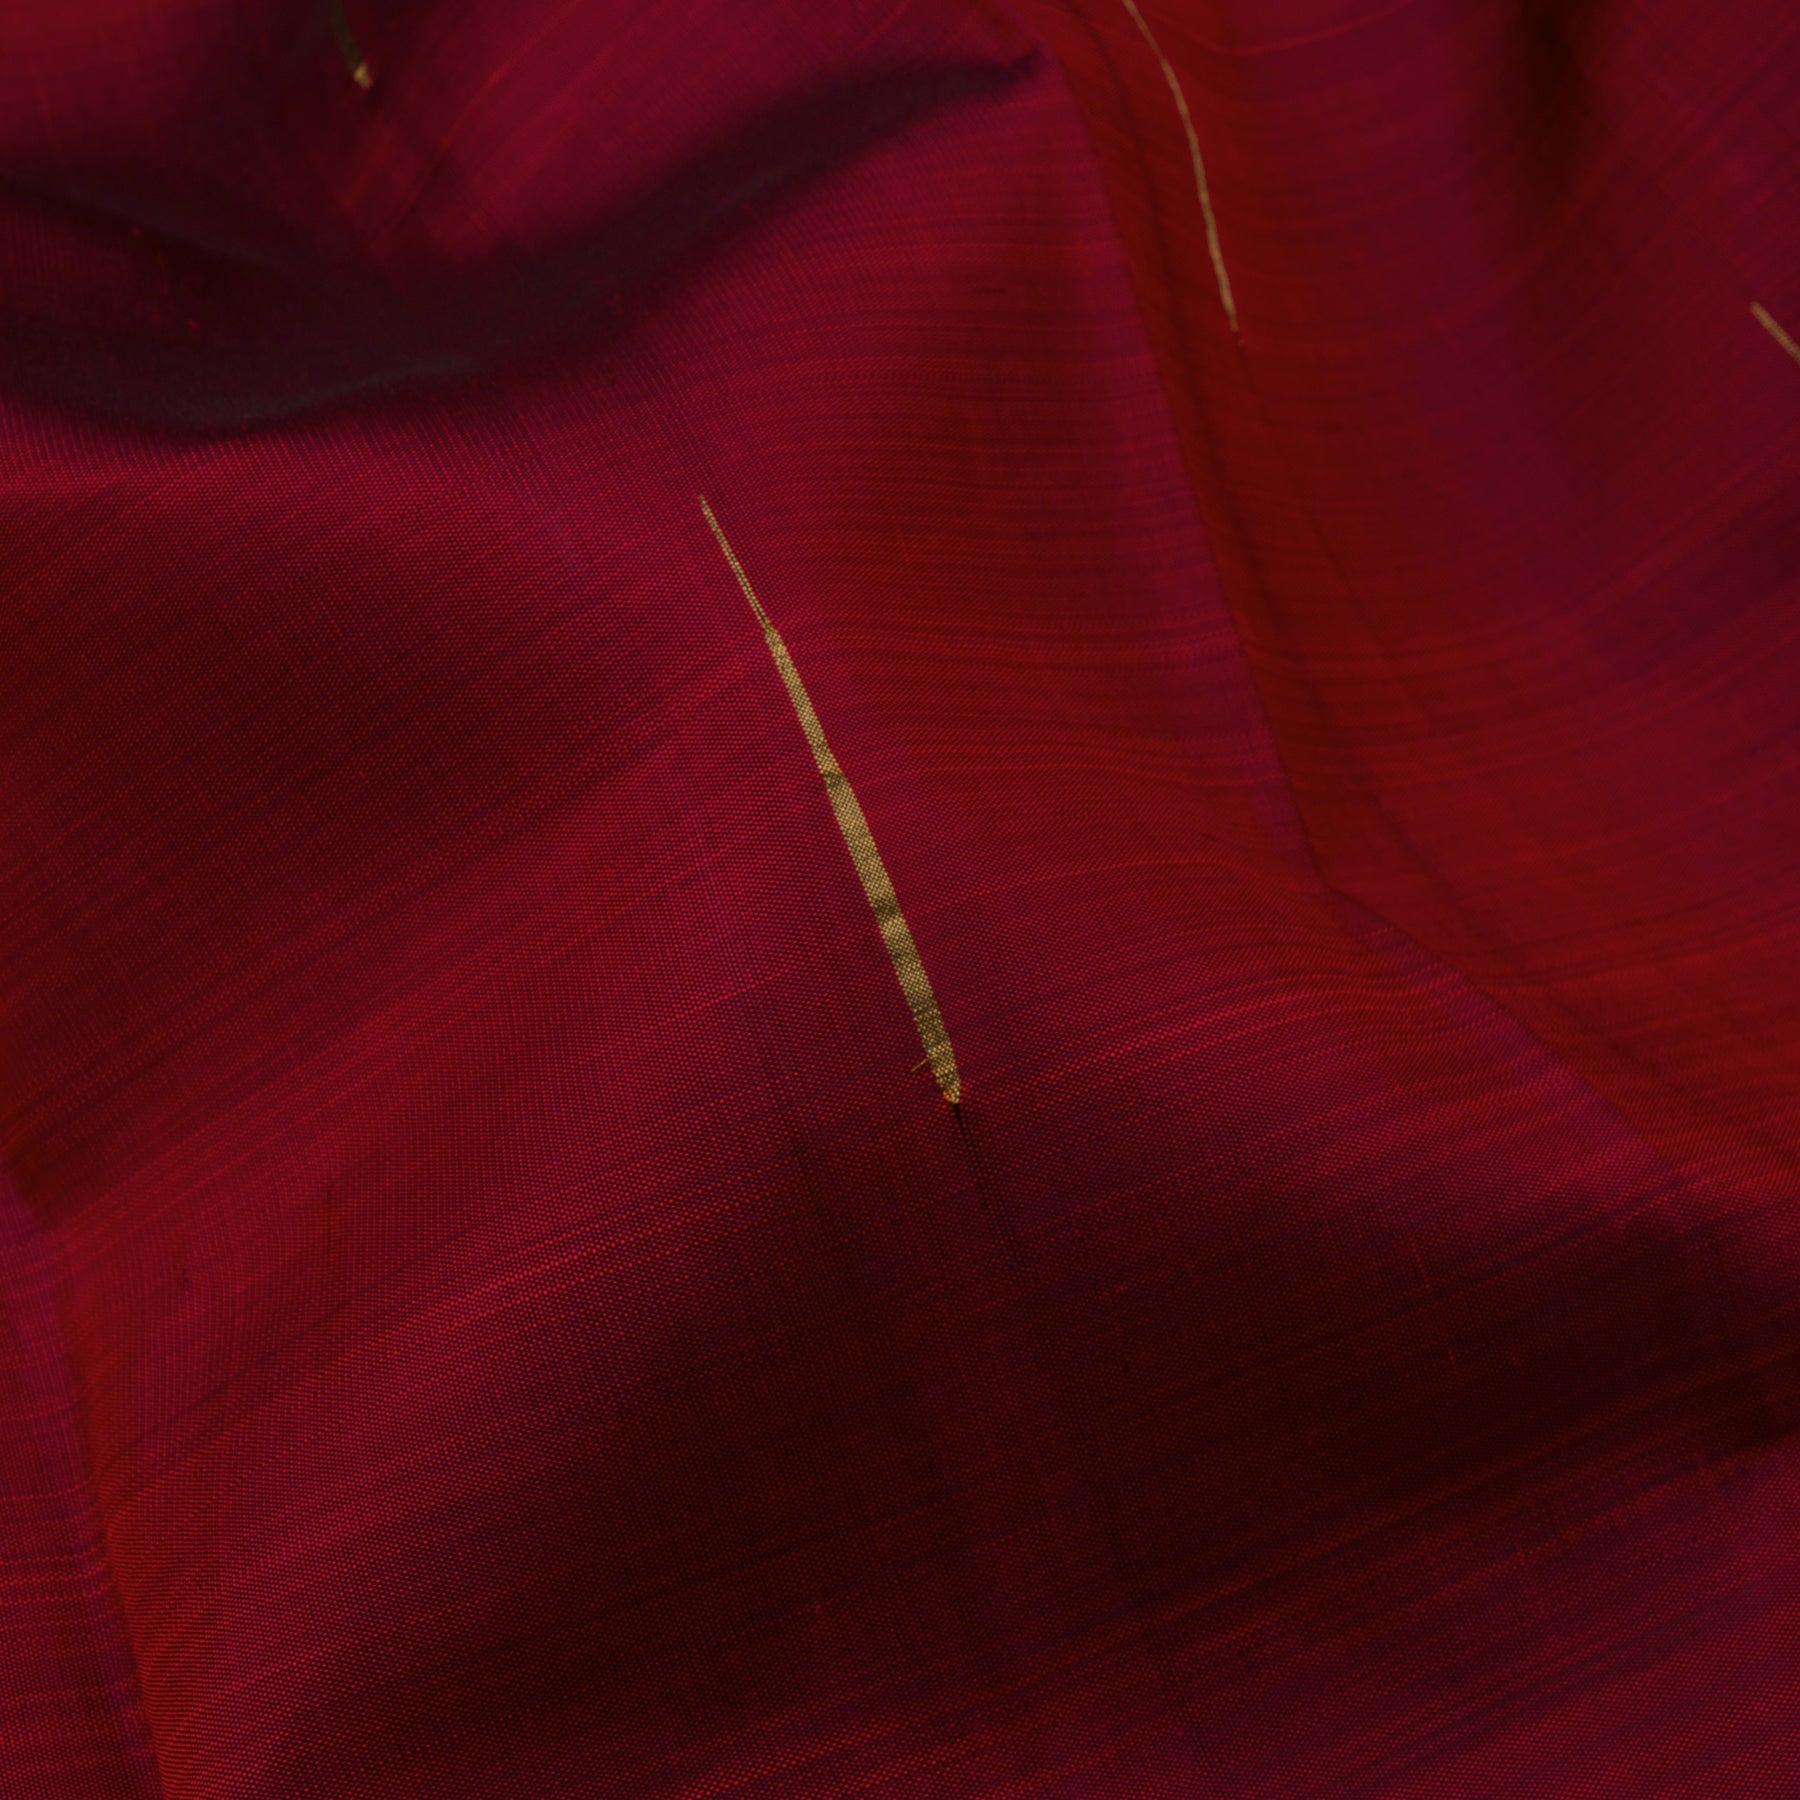 Kanakavalli Kanjivaram Silk Sari 22-595-HS001-12365 - Fabric View